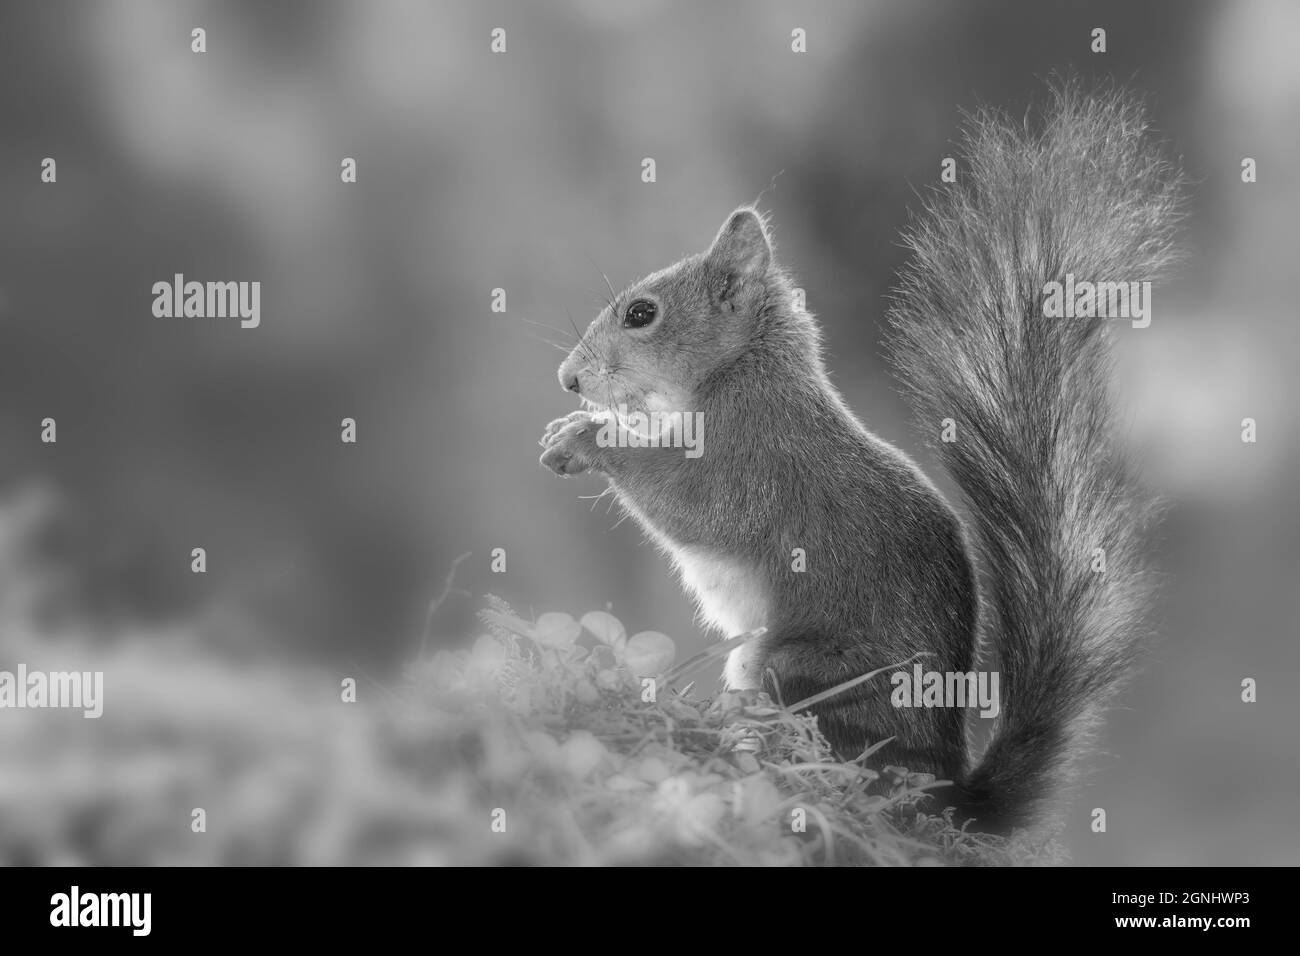 Nahaufnahme des roten Eichhörnchens mit Pflanzen in Schwarz und Weiß Stockfoto